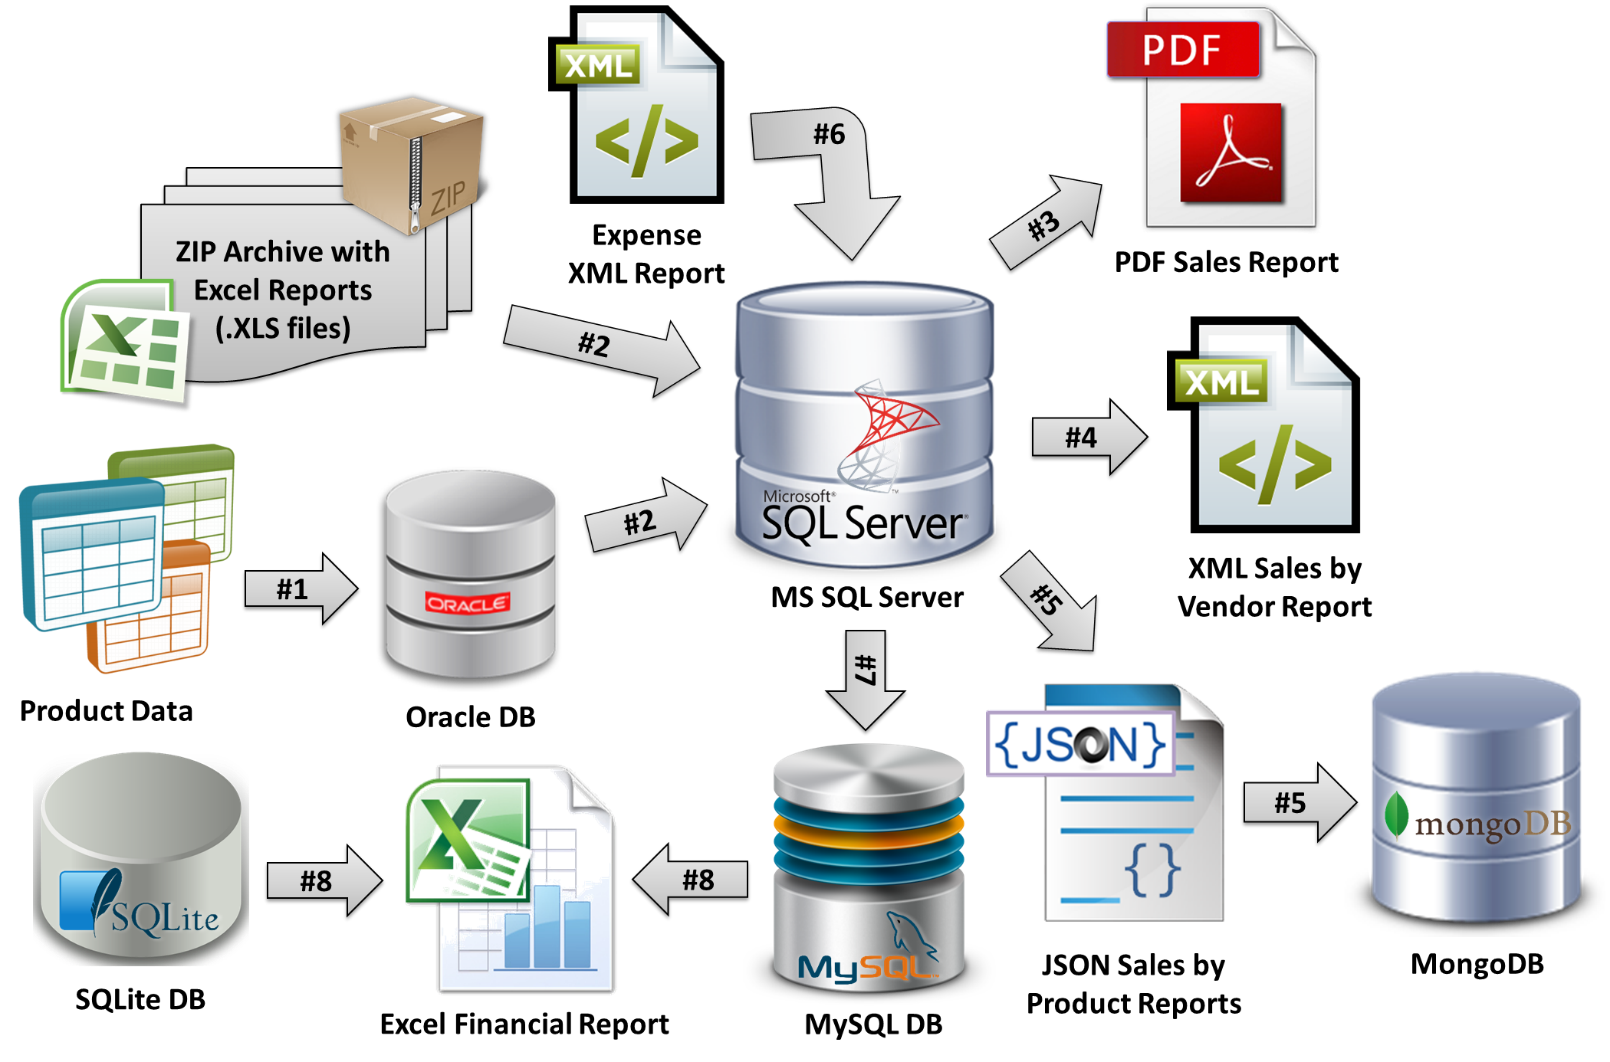 Базы данных. Изображение базы данных. Базы данных иллюстрация. База данных SQL Server.